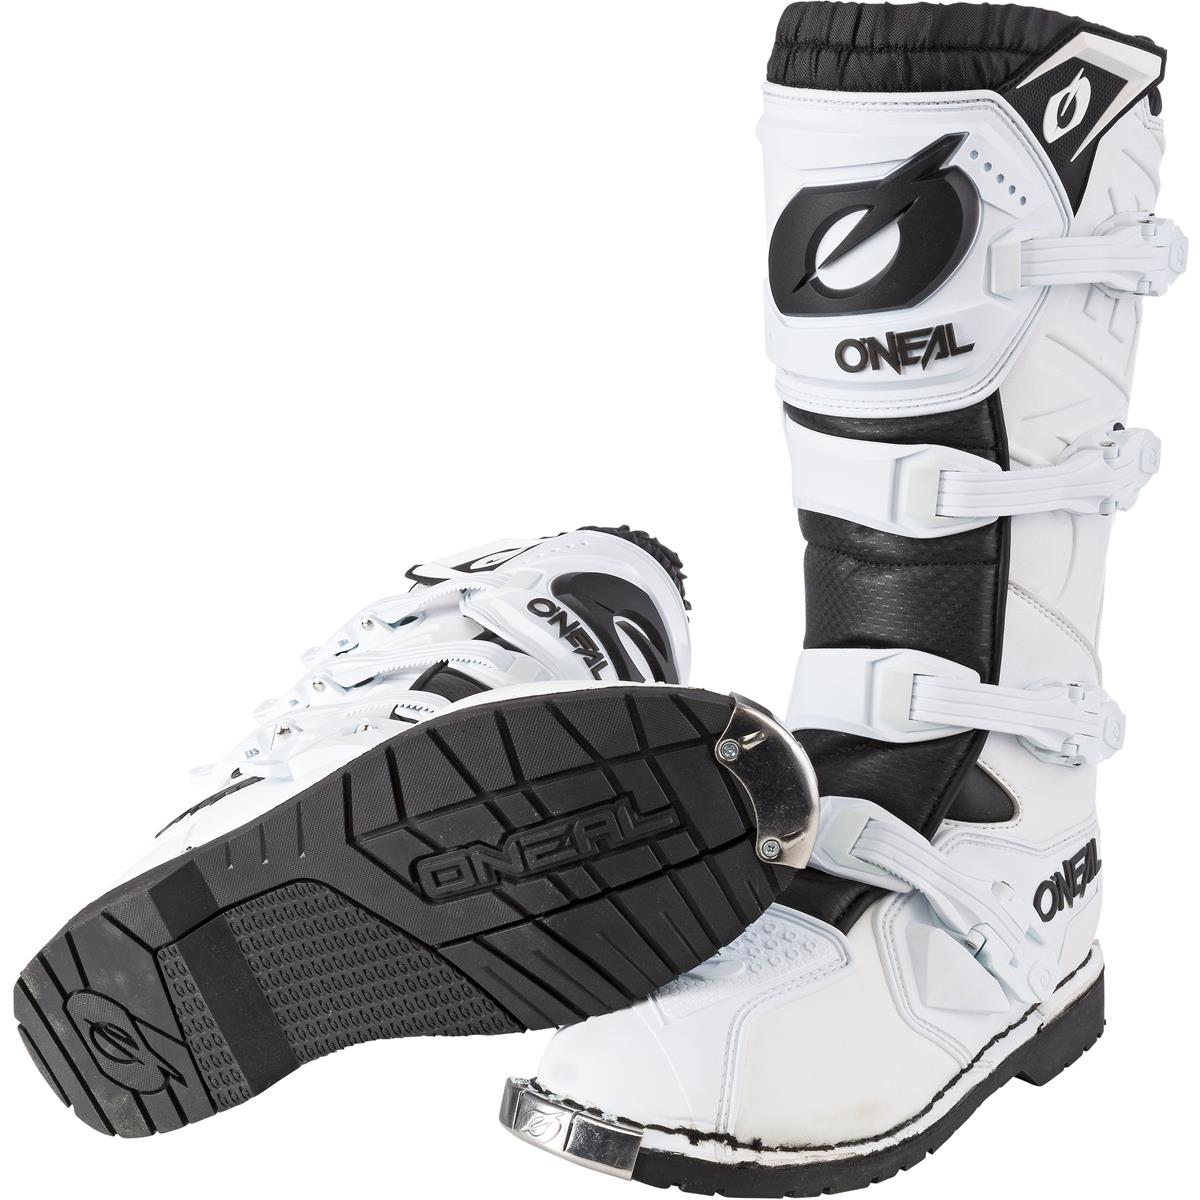 Boots Rider Pro Erwachsene Enduro Motorrad Motocross-Stiefel vier Verschlussschnallen O'NEAL Komfort durch Air-Mesh-Innenleben hochwertiges Synthetik-Material